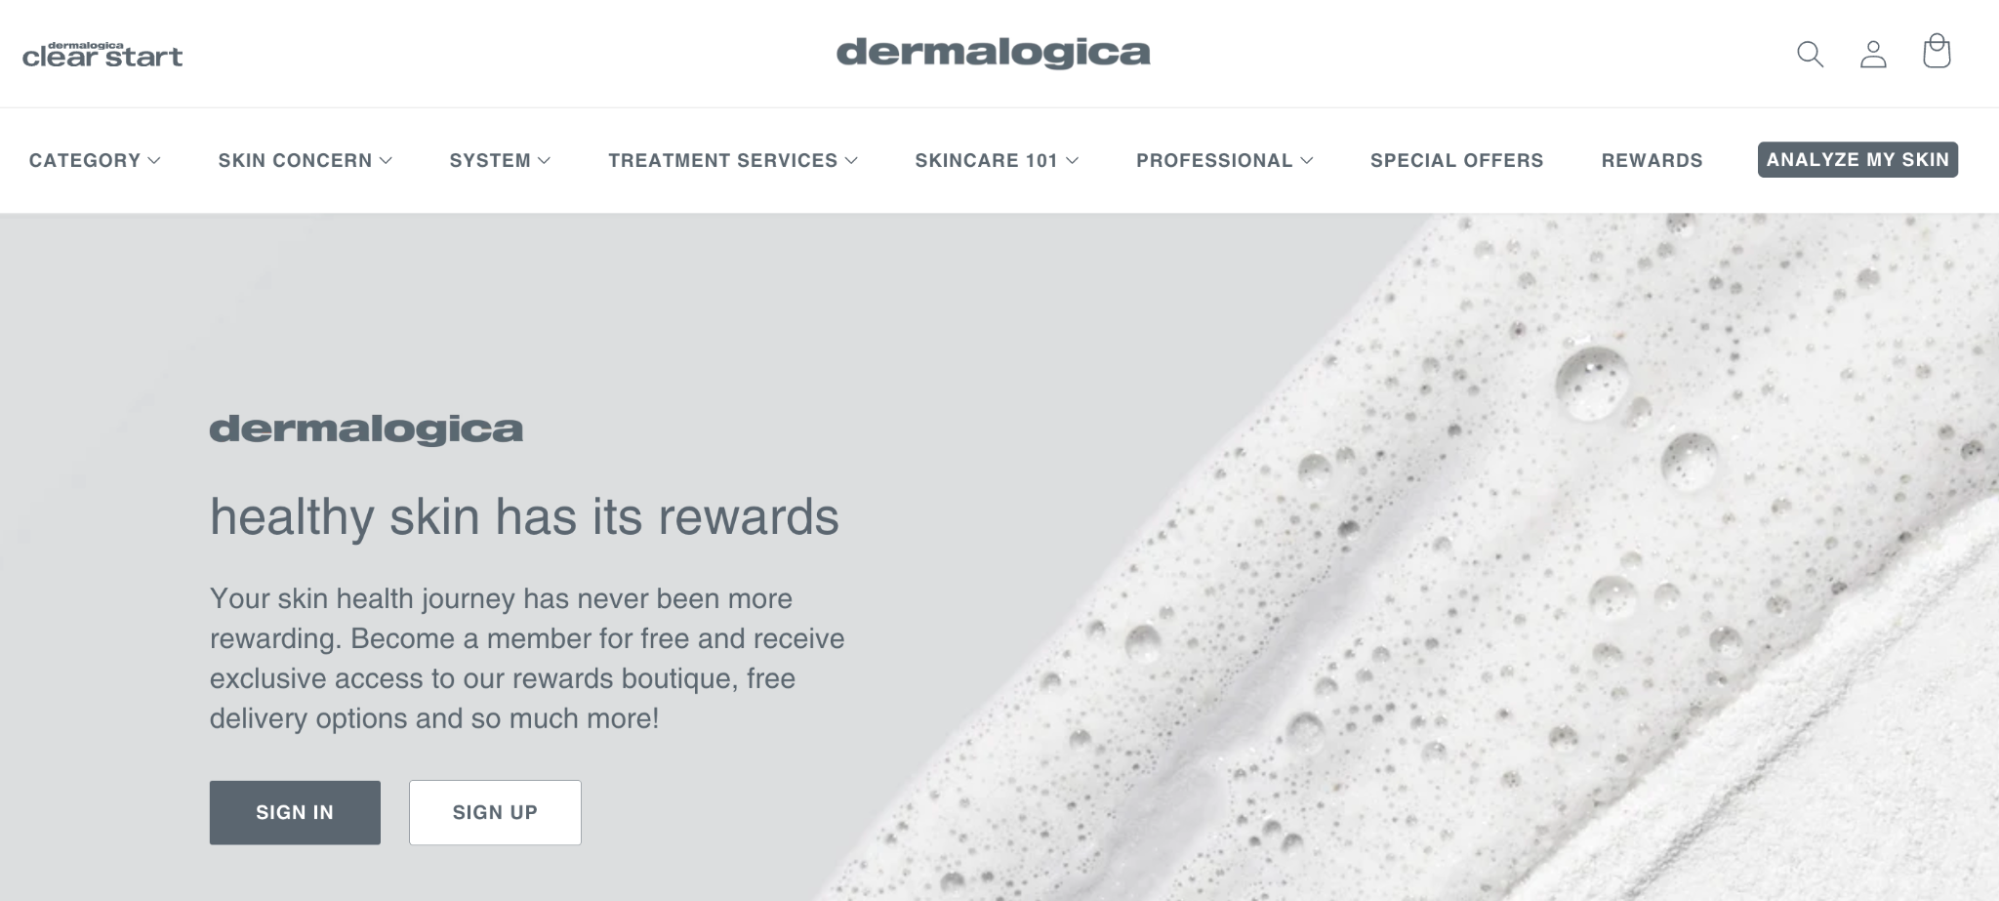 An image of Dermalogica’s rewards program signup screen.